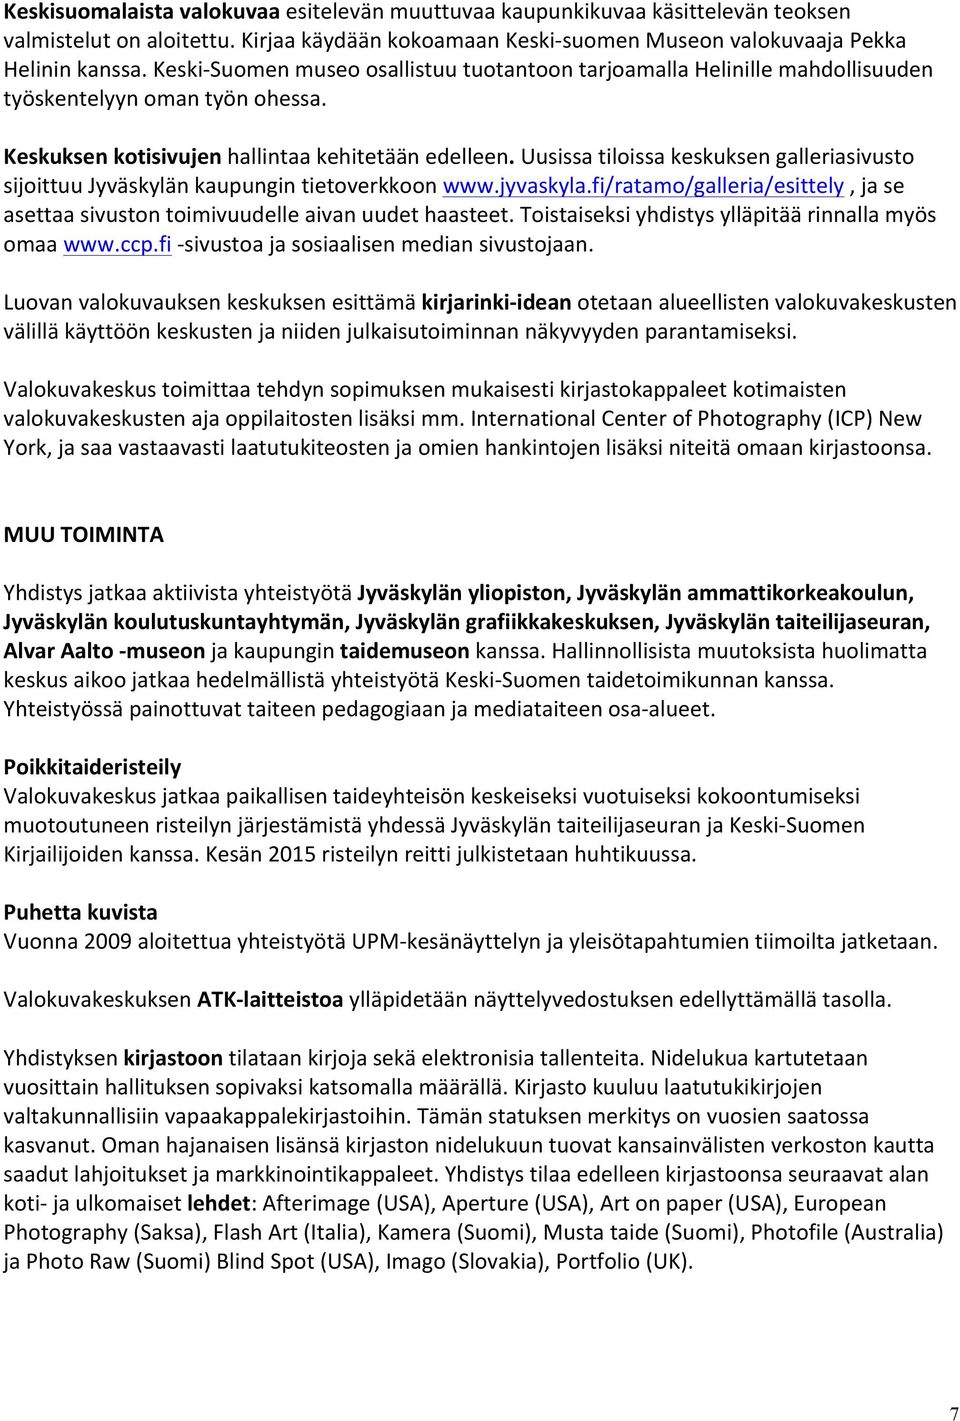 Uusissa tiloissa keskuksen galleriasivusto sijoittuu Jyväskylän kaupungin tietoverkkoon www.jyvaskyla.fi/ratamo/galleria/esittely, ja se asettaa sivuston toimivuudelle aivan uudet haasteet.